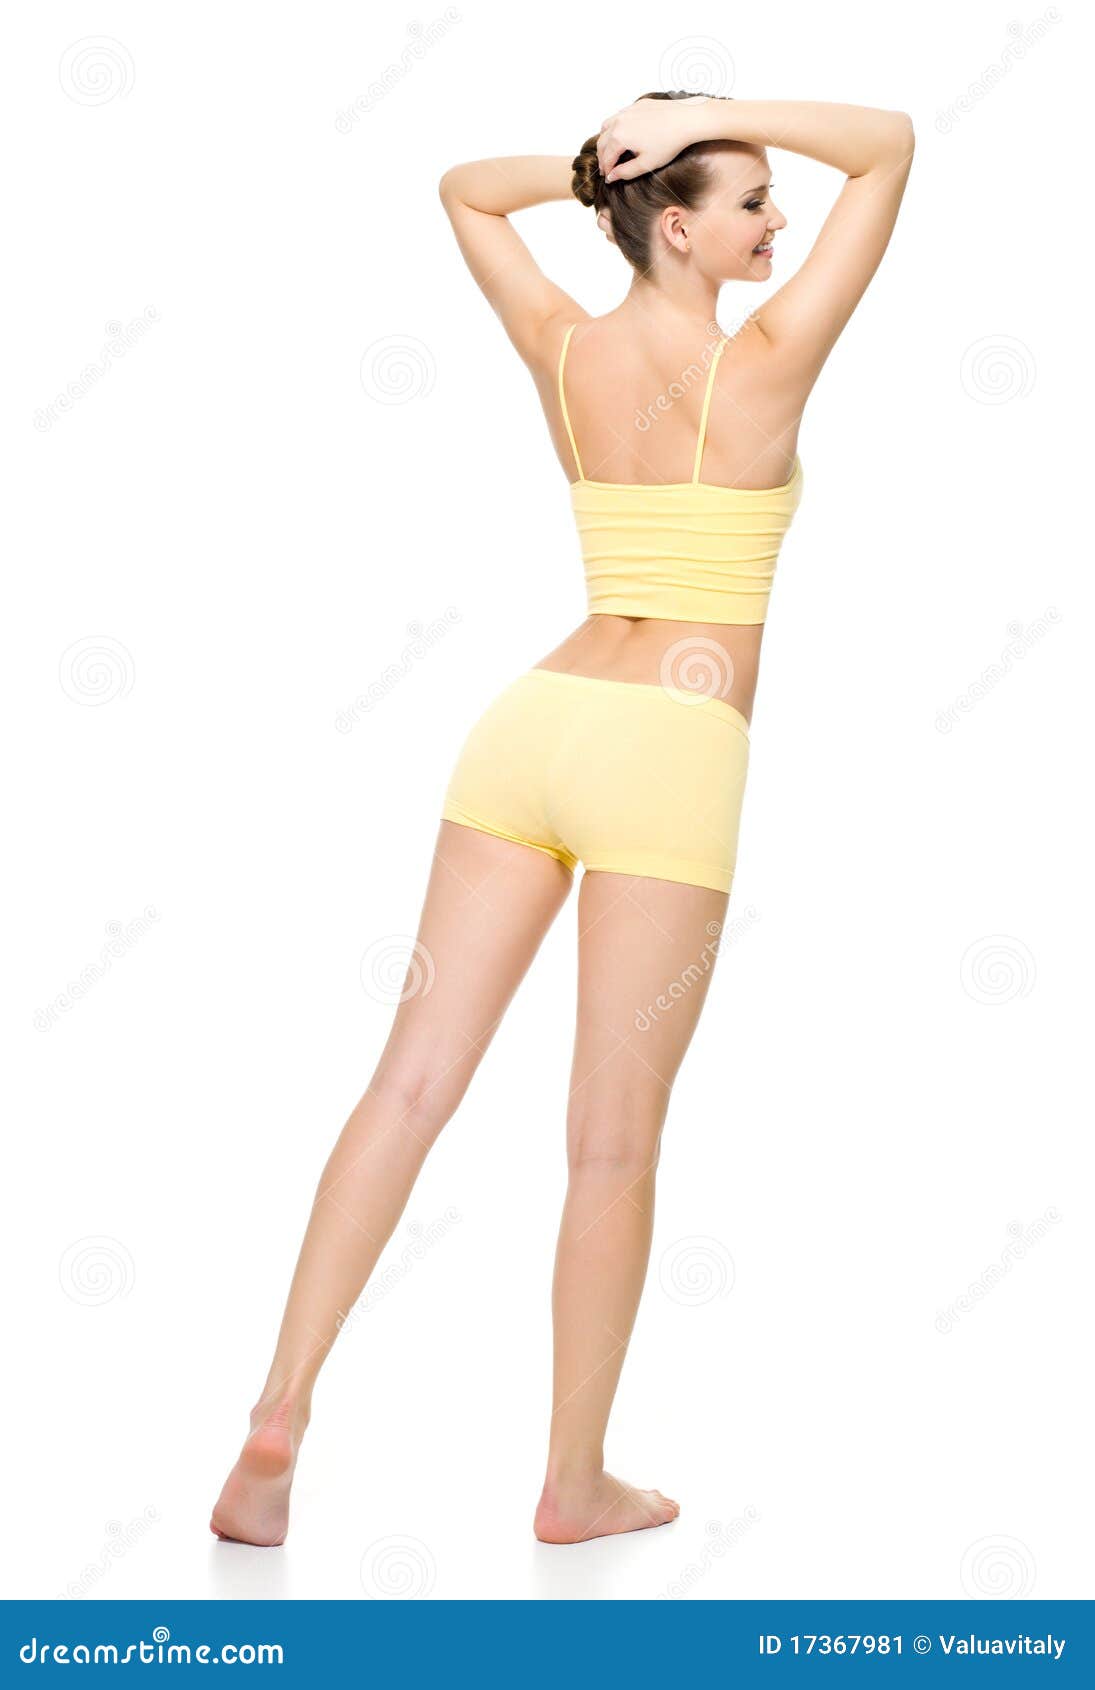 https://thumbs.dreamstime.com/z/beautiful-sporty-female-body-yellow-underwear-17367981.jpg